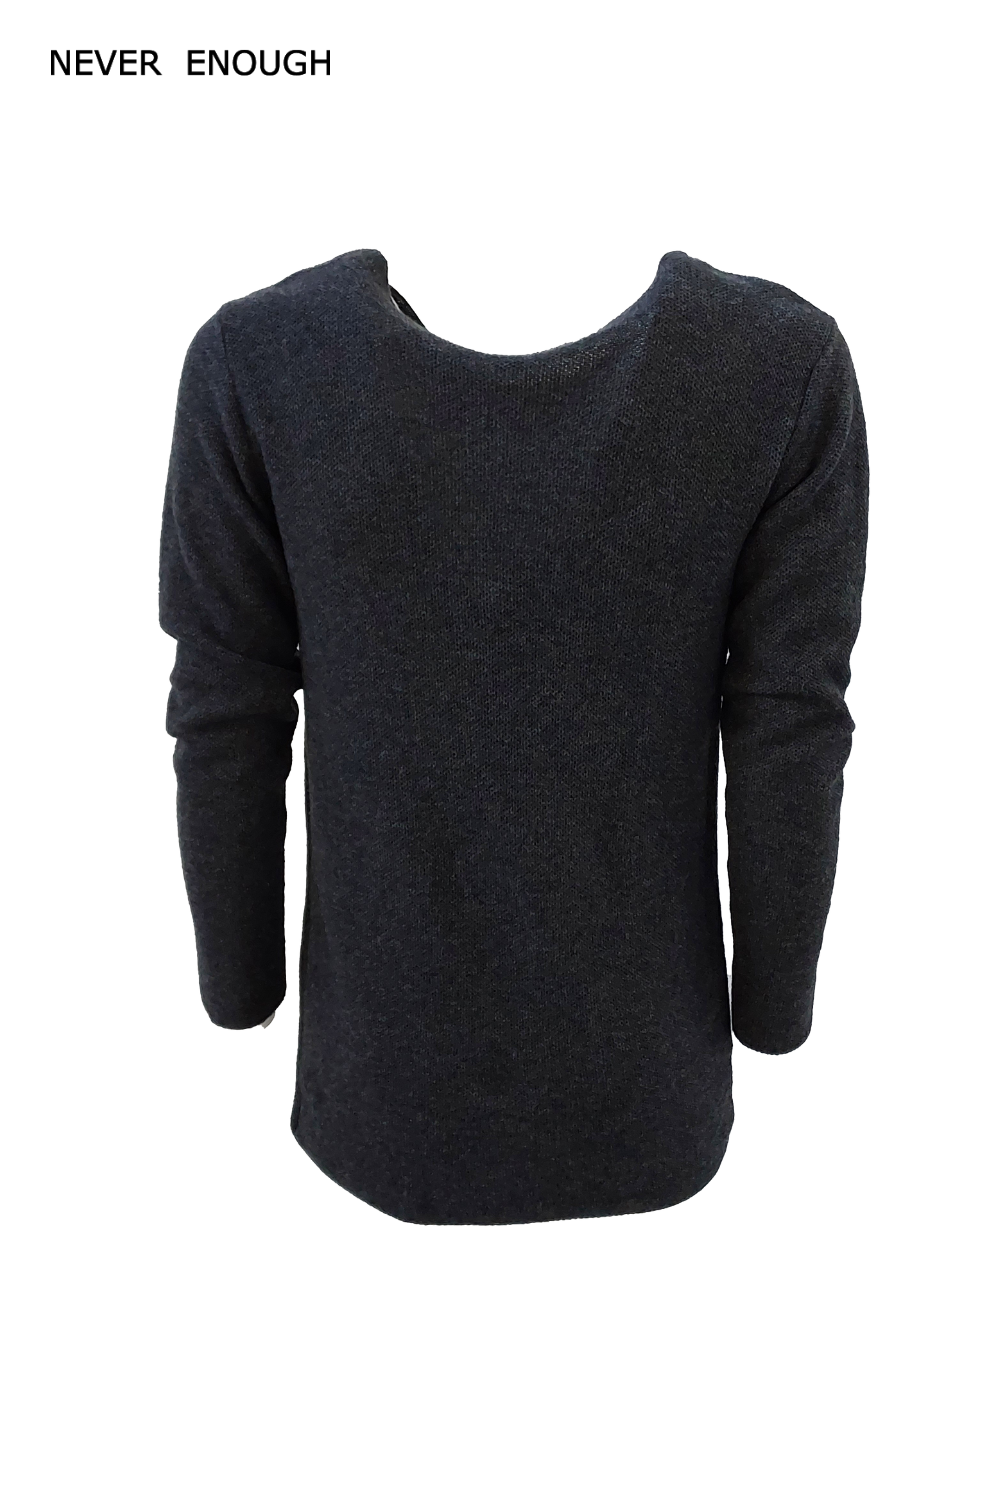 Man sweater MKN044